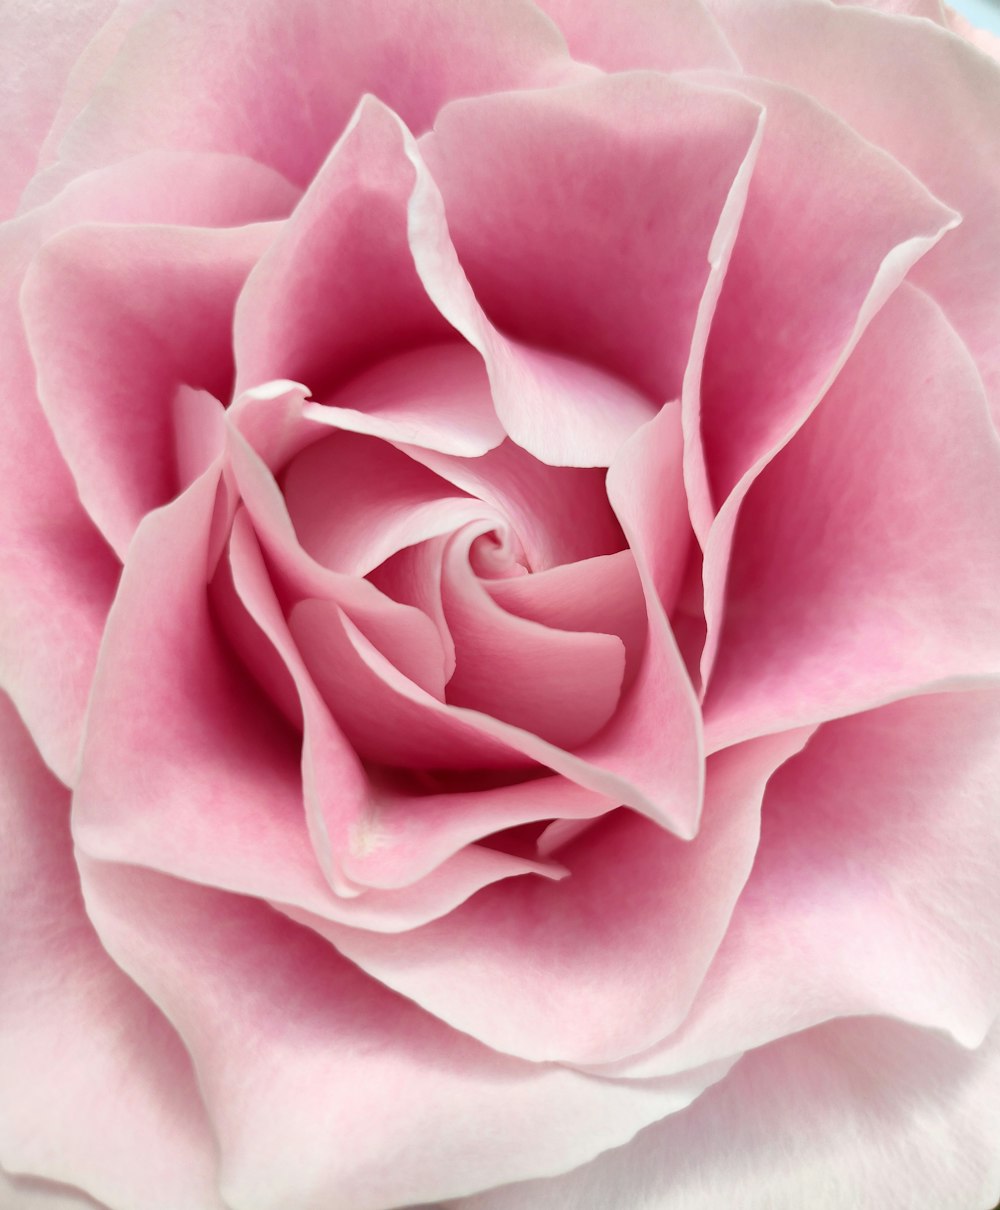 um close up de uma flor rosa rosa